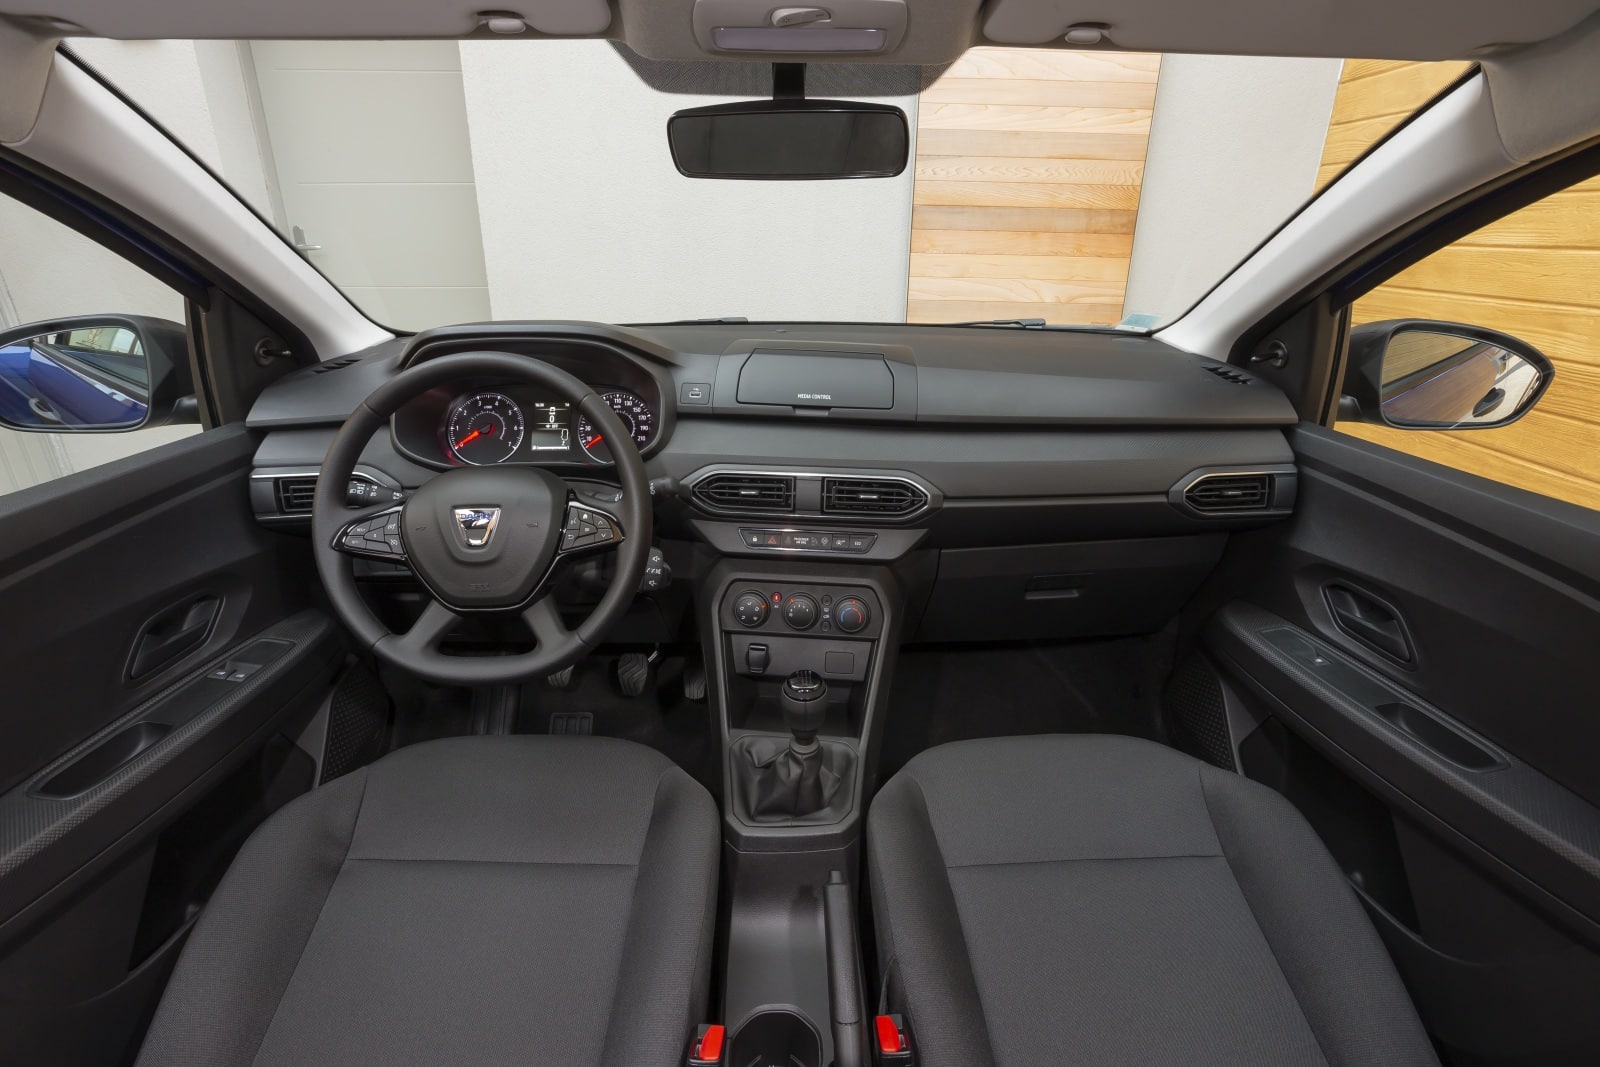 Dacia - Sensores de aparcamiento traseros con espejo de pantalla